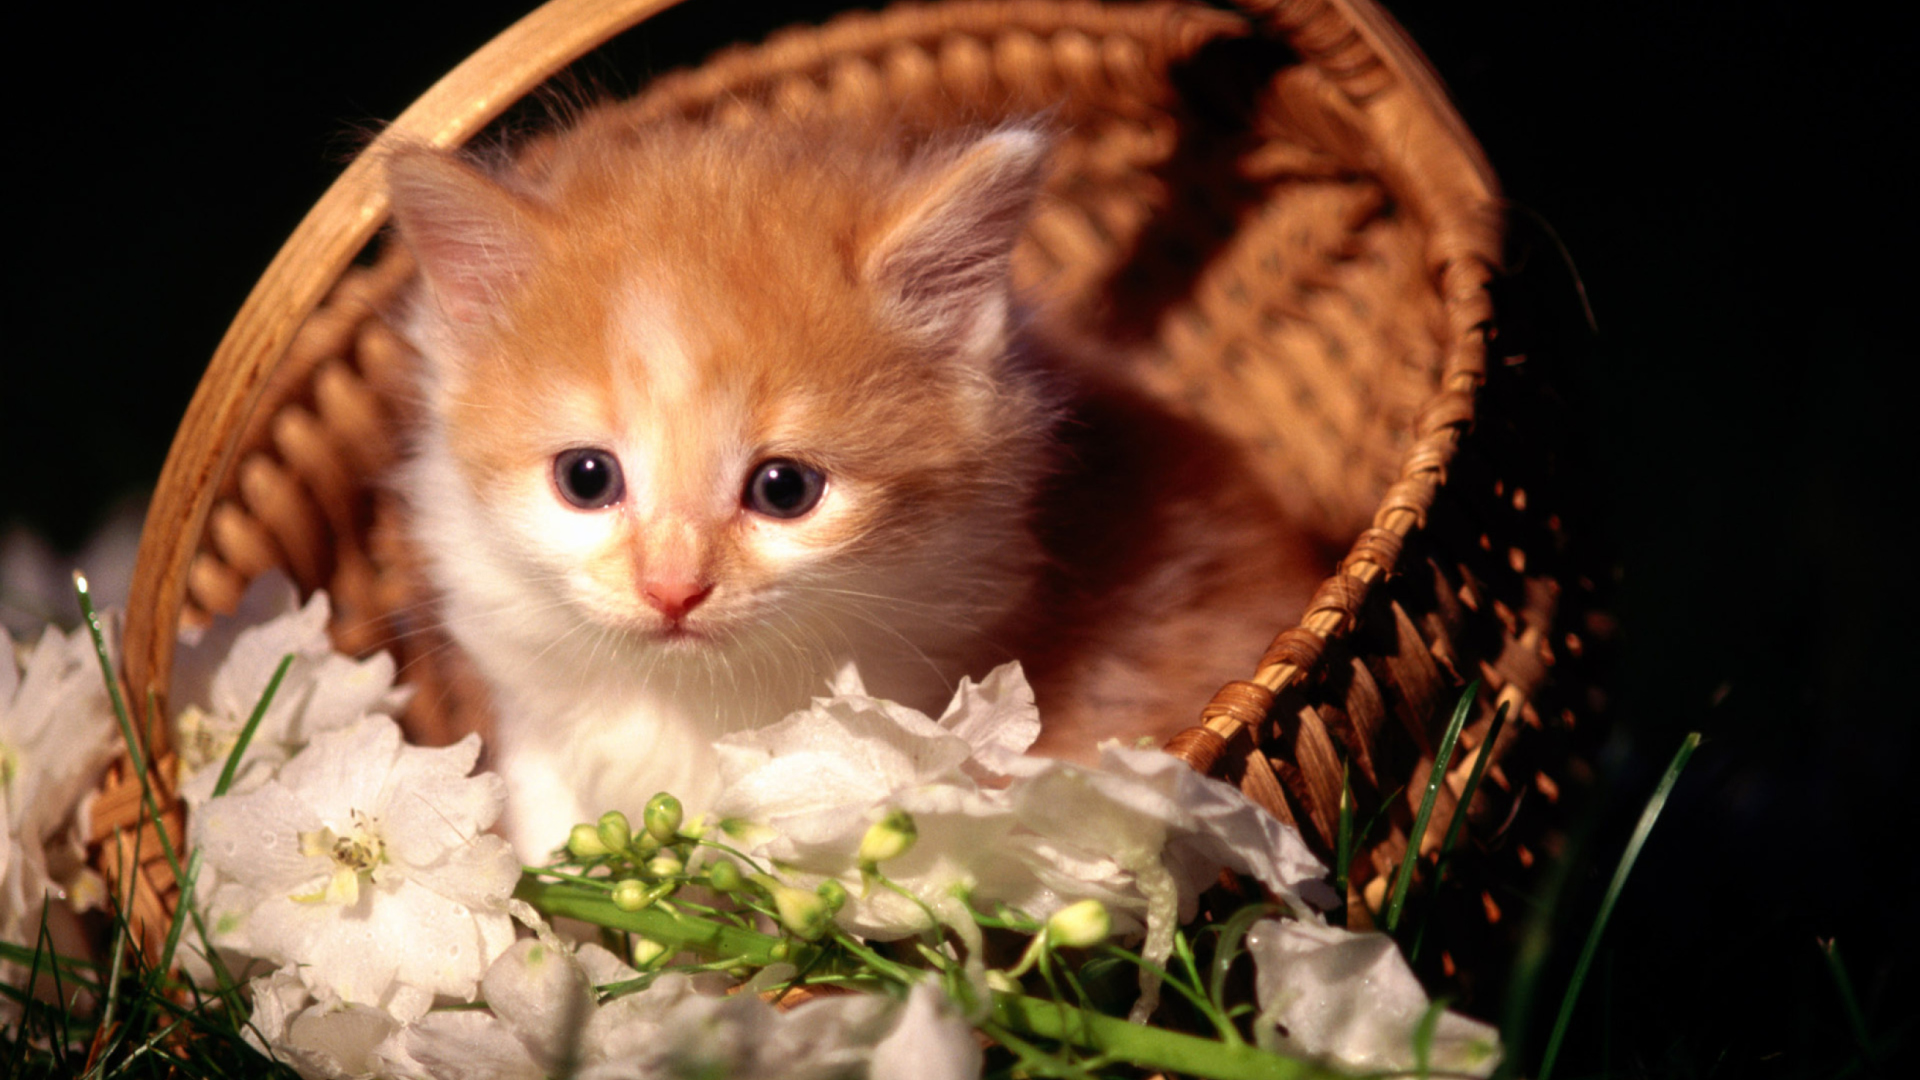 Cute Kitten in a Basket wallpaper 1920x1080